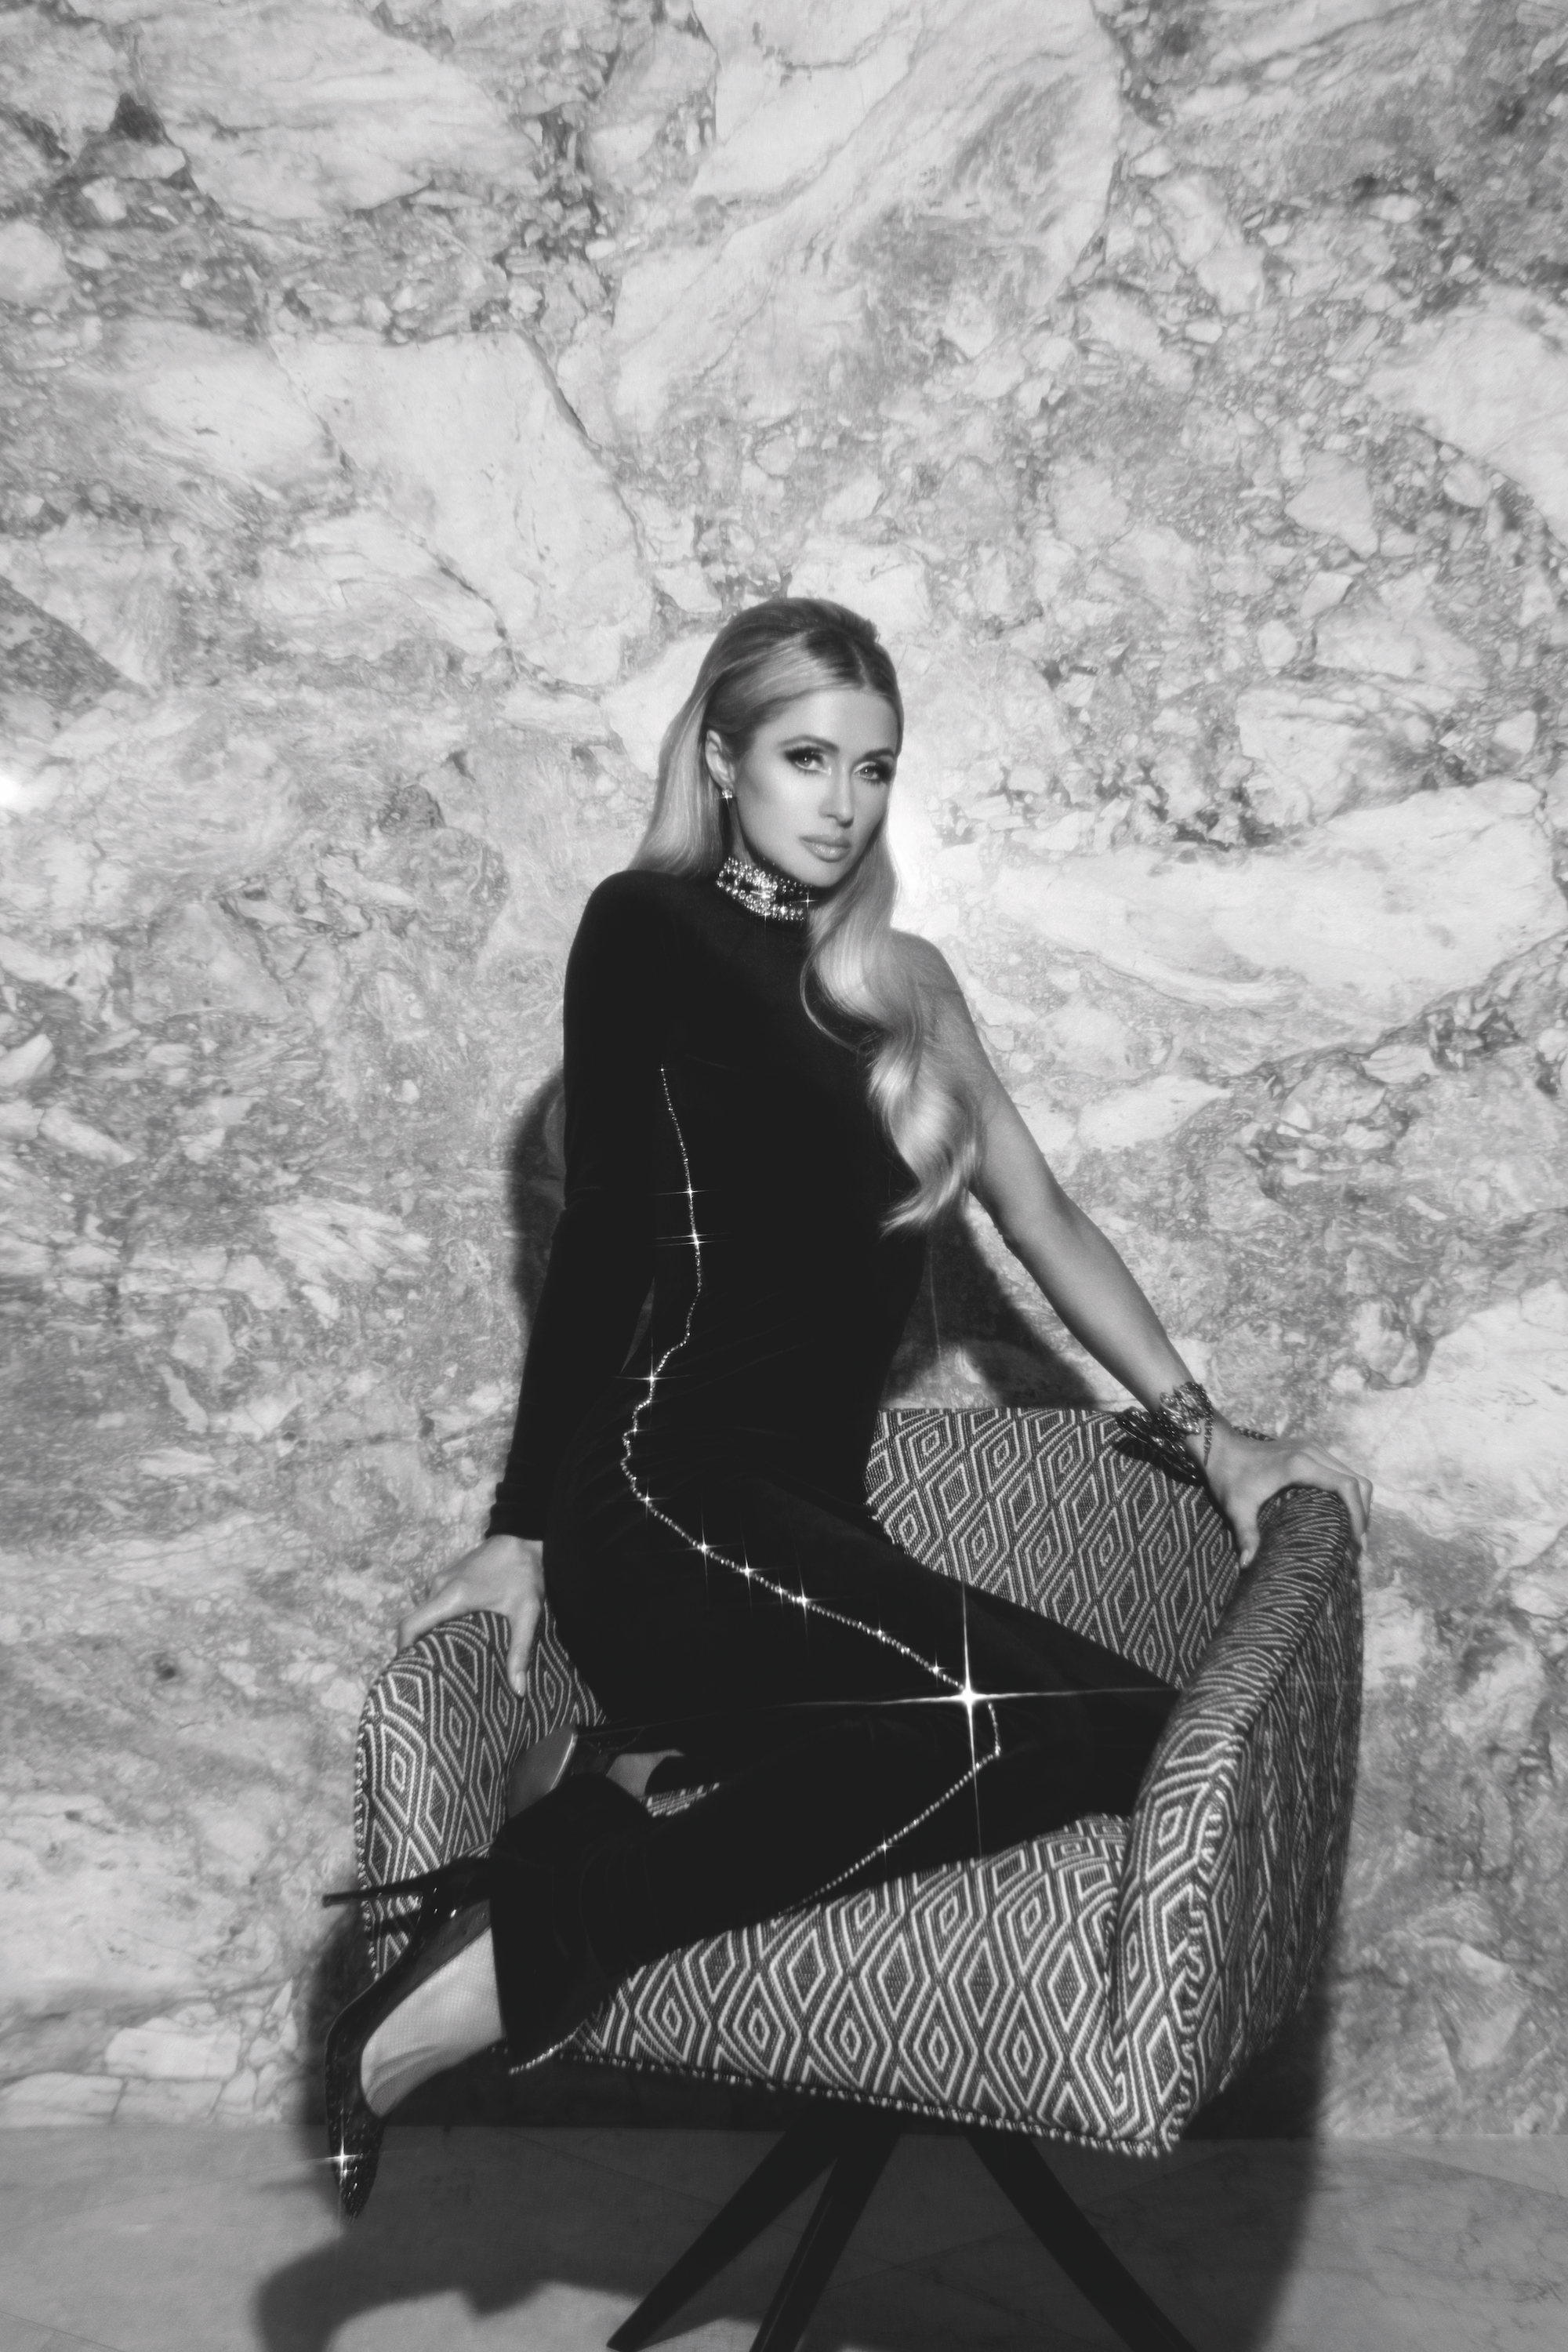 Paris Hilton suintant Sex Appeal dans New Shoot! - Photo 5